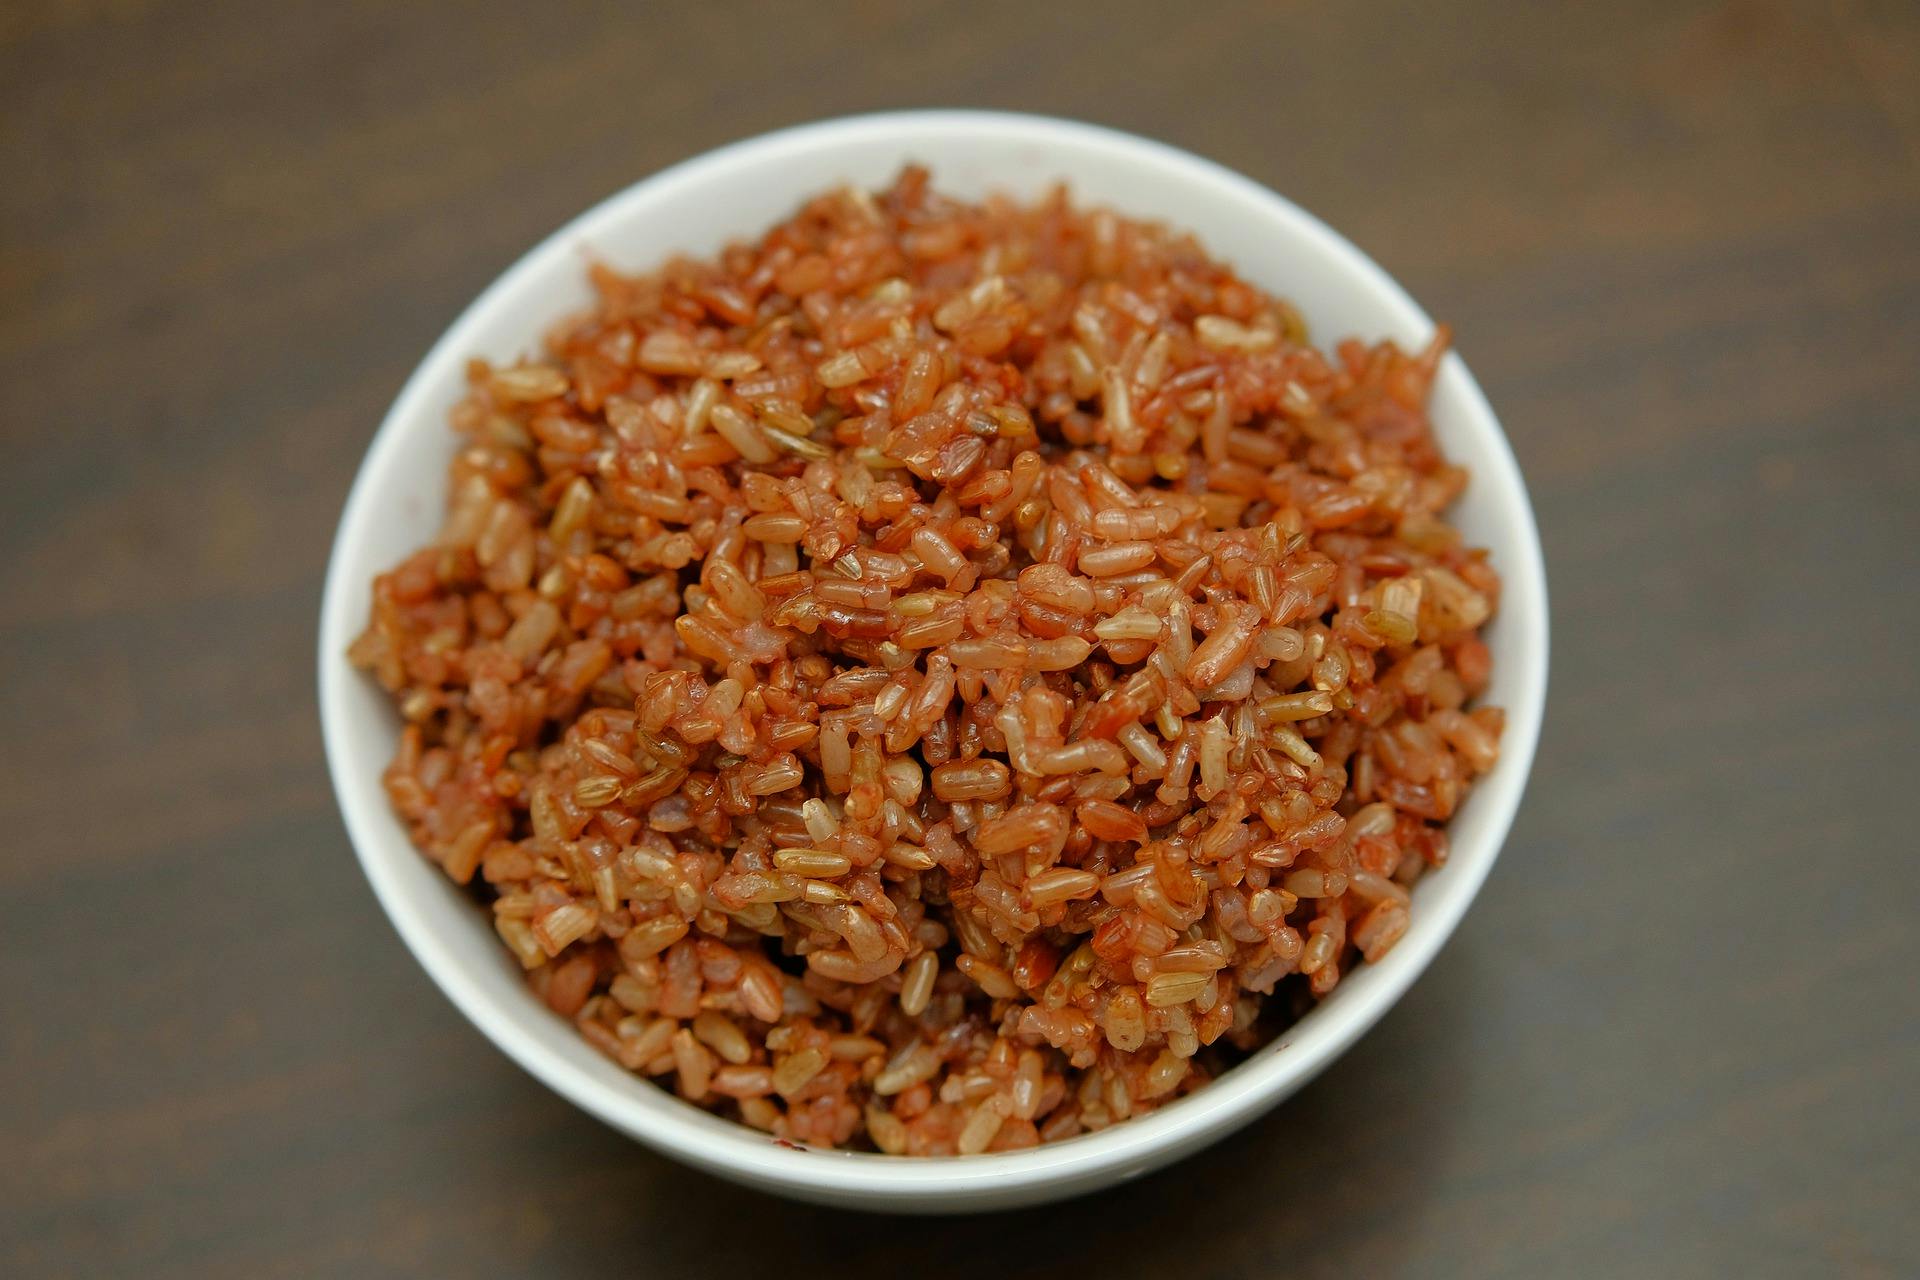 Comment cuisiner le riz gluant noir (kao niew dam ข้าวเหนียวดำ ou Thai  black sticky rice) avec un cuiseur vapeur – CHANITA